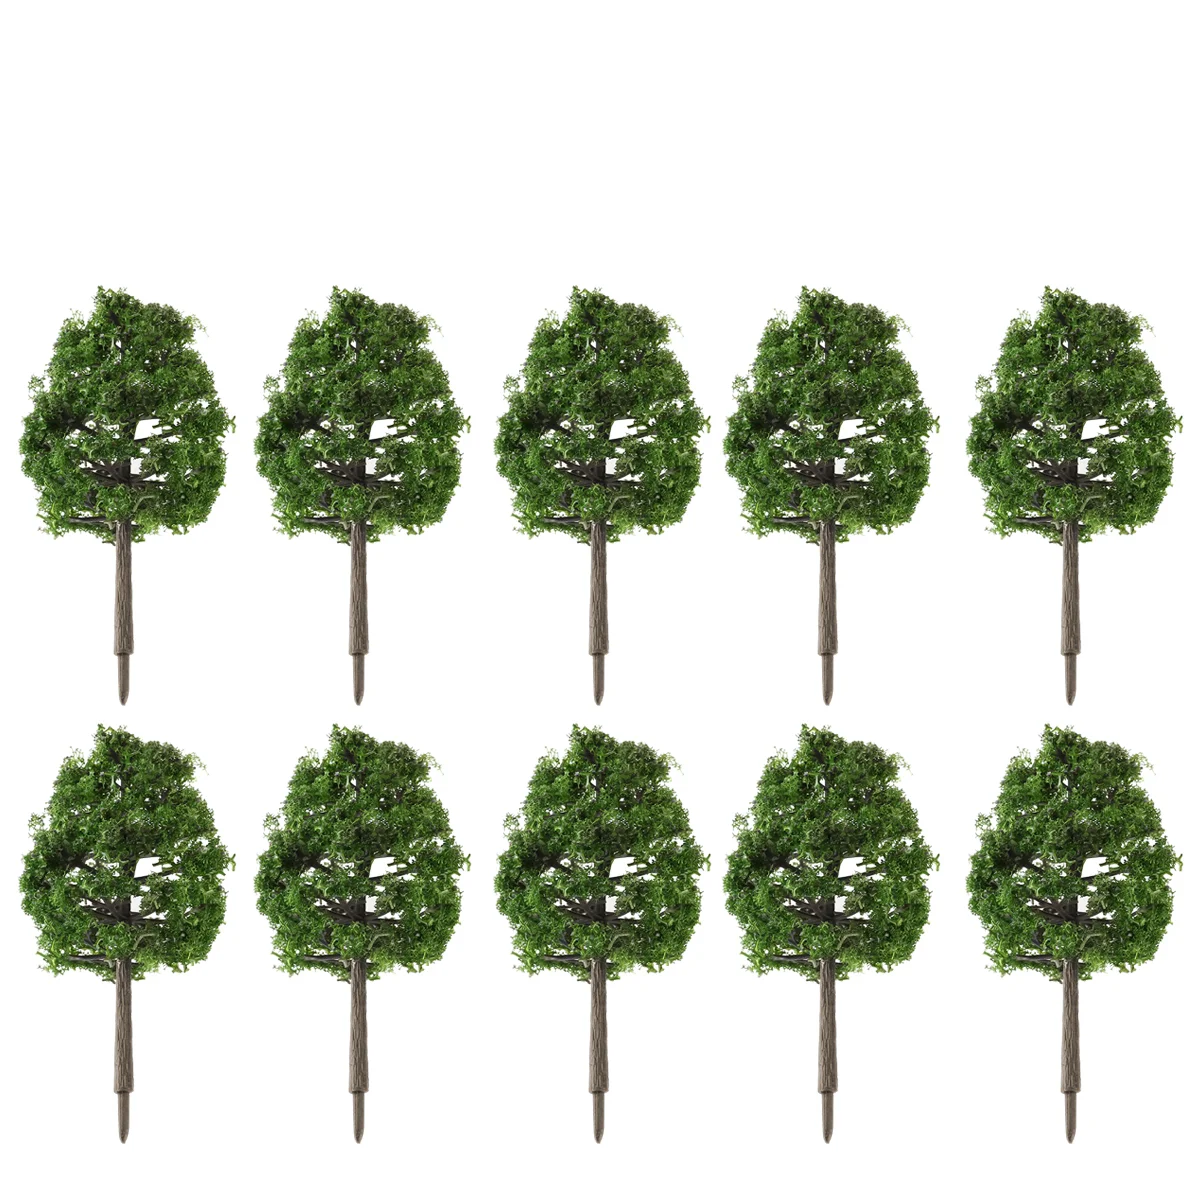 

Модель деревья декорации, модель 20шт, моделирование деревьев, прочная 9 см, архитектурная модель деревьев, пейзаж для сада, горшка, офиса